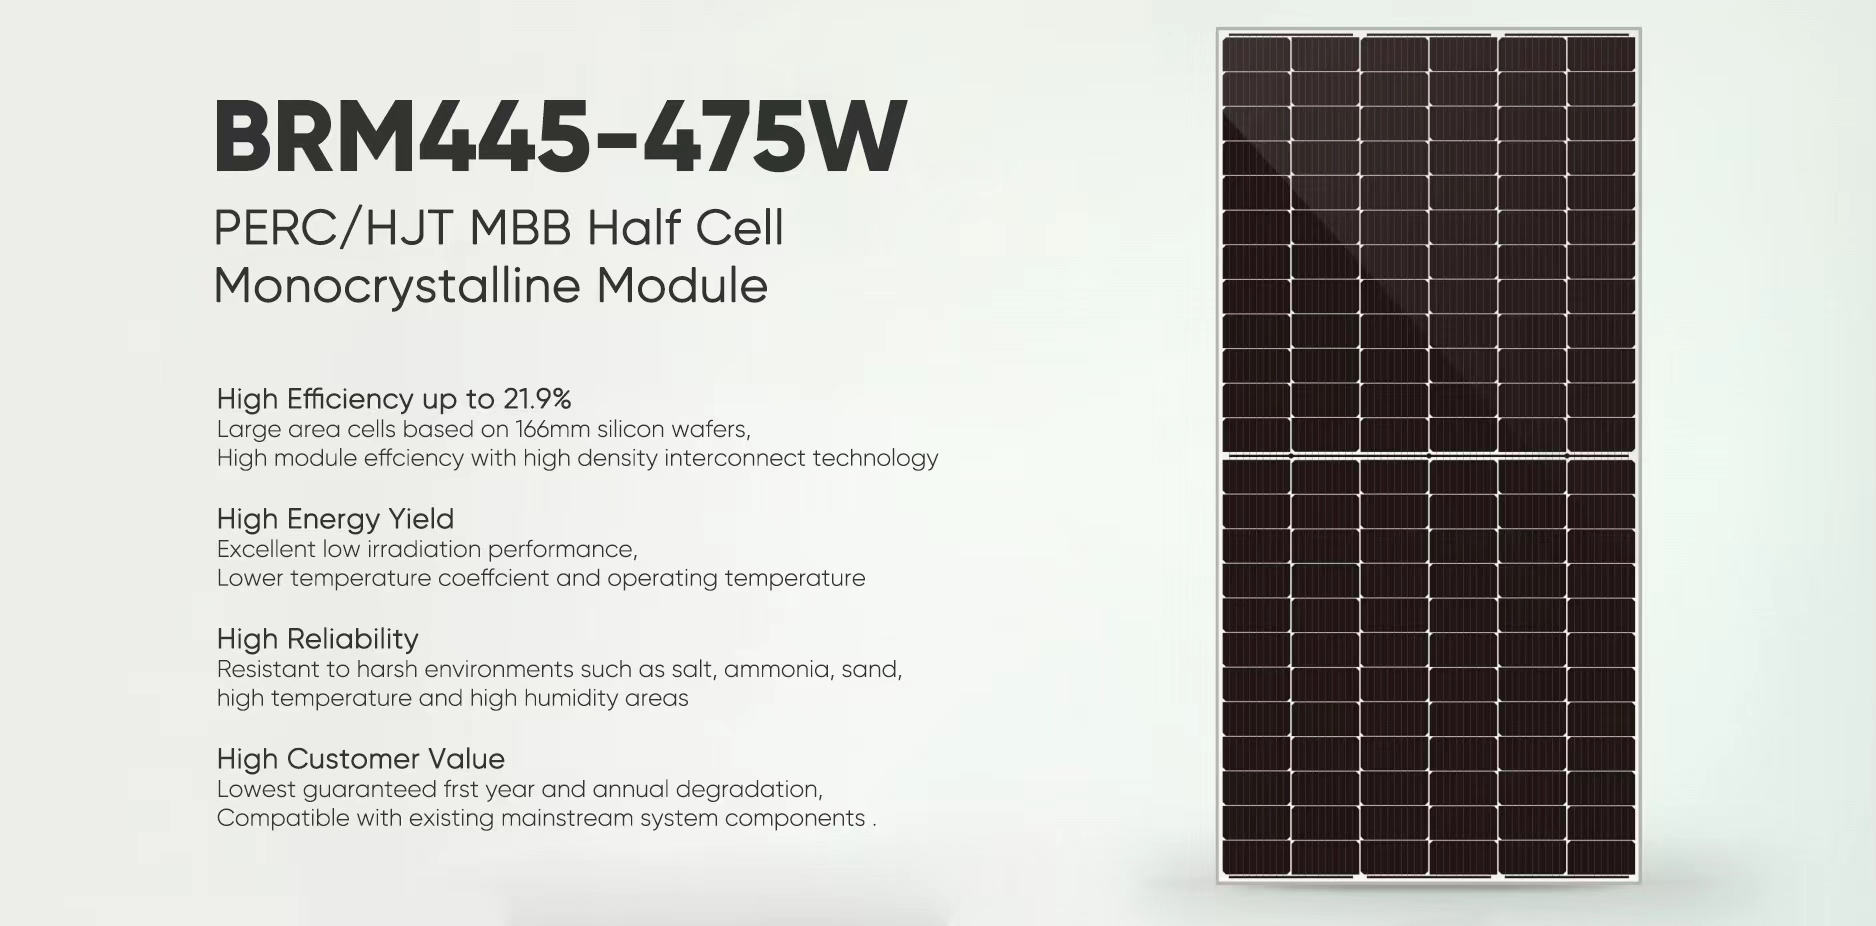 Áp phích bảng điều khiển năng lượng mặt trời 445W-475W